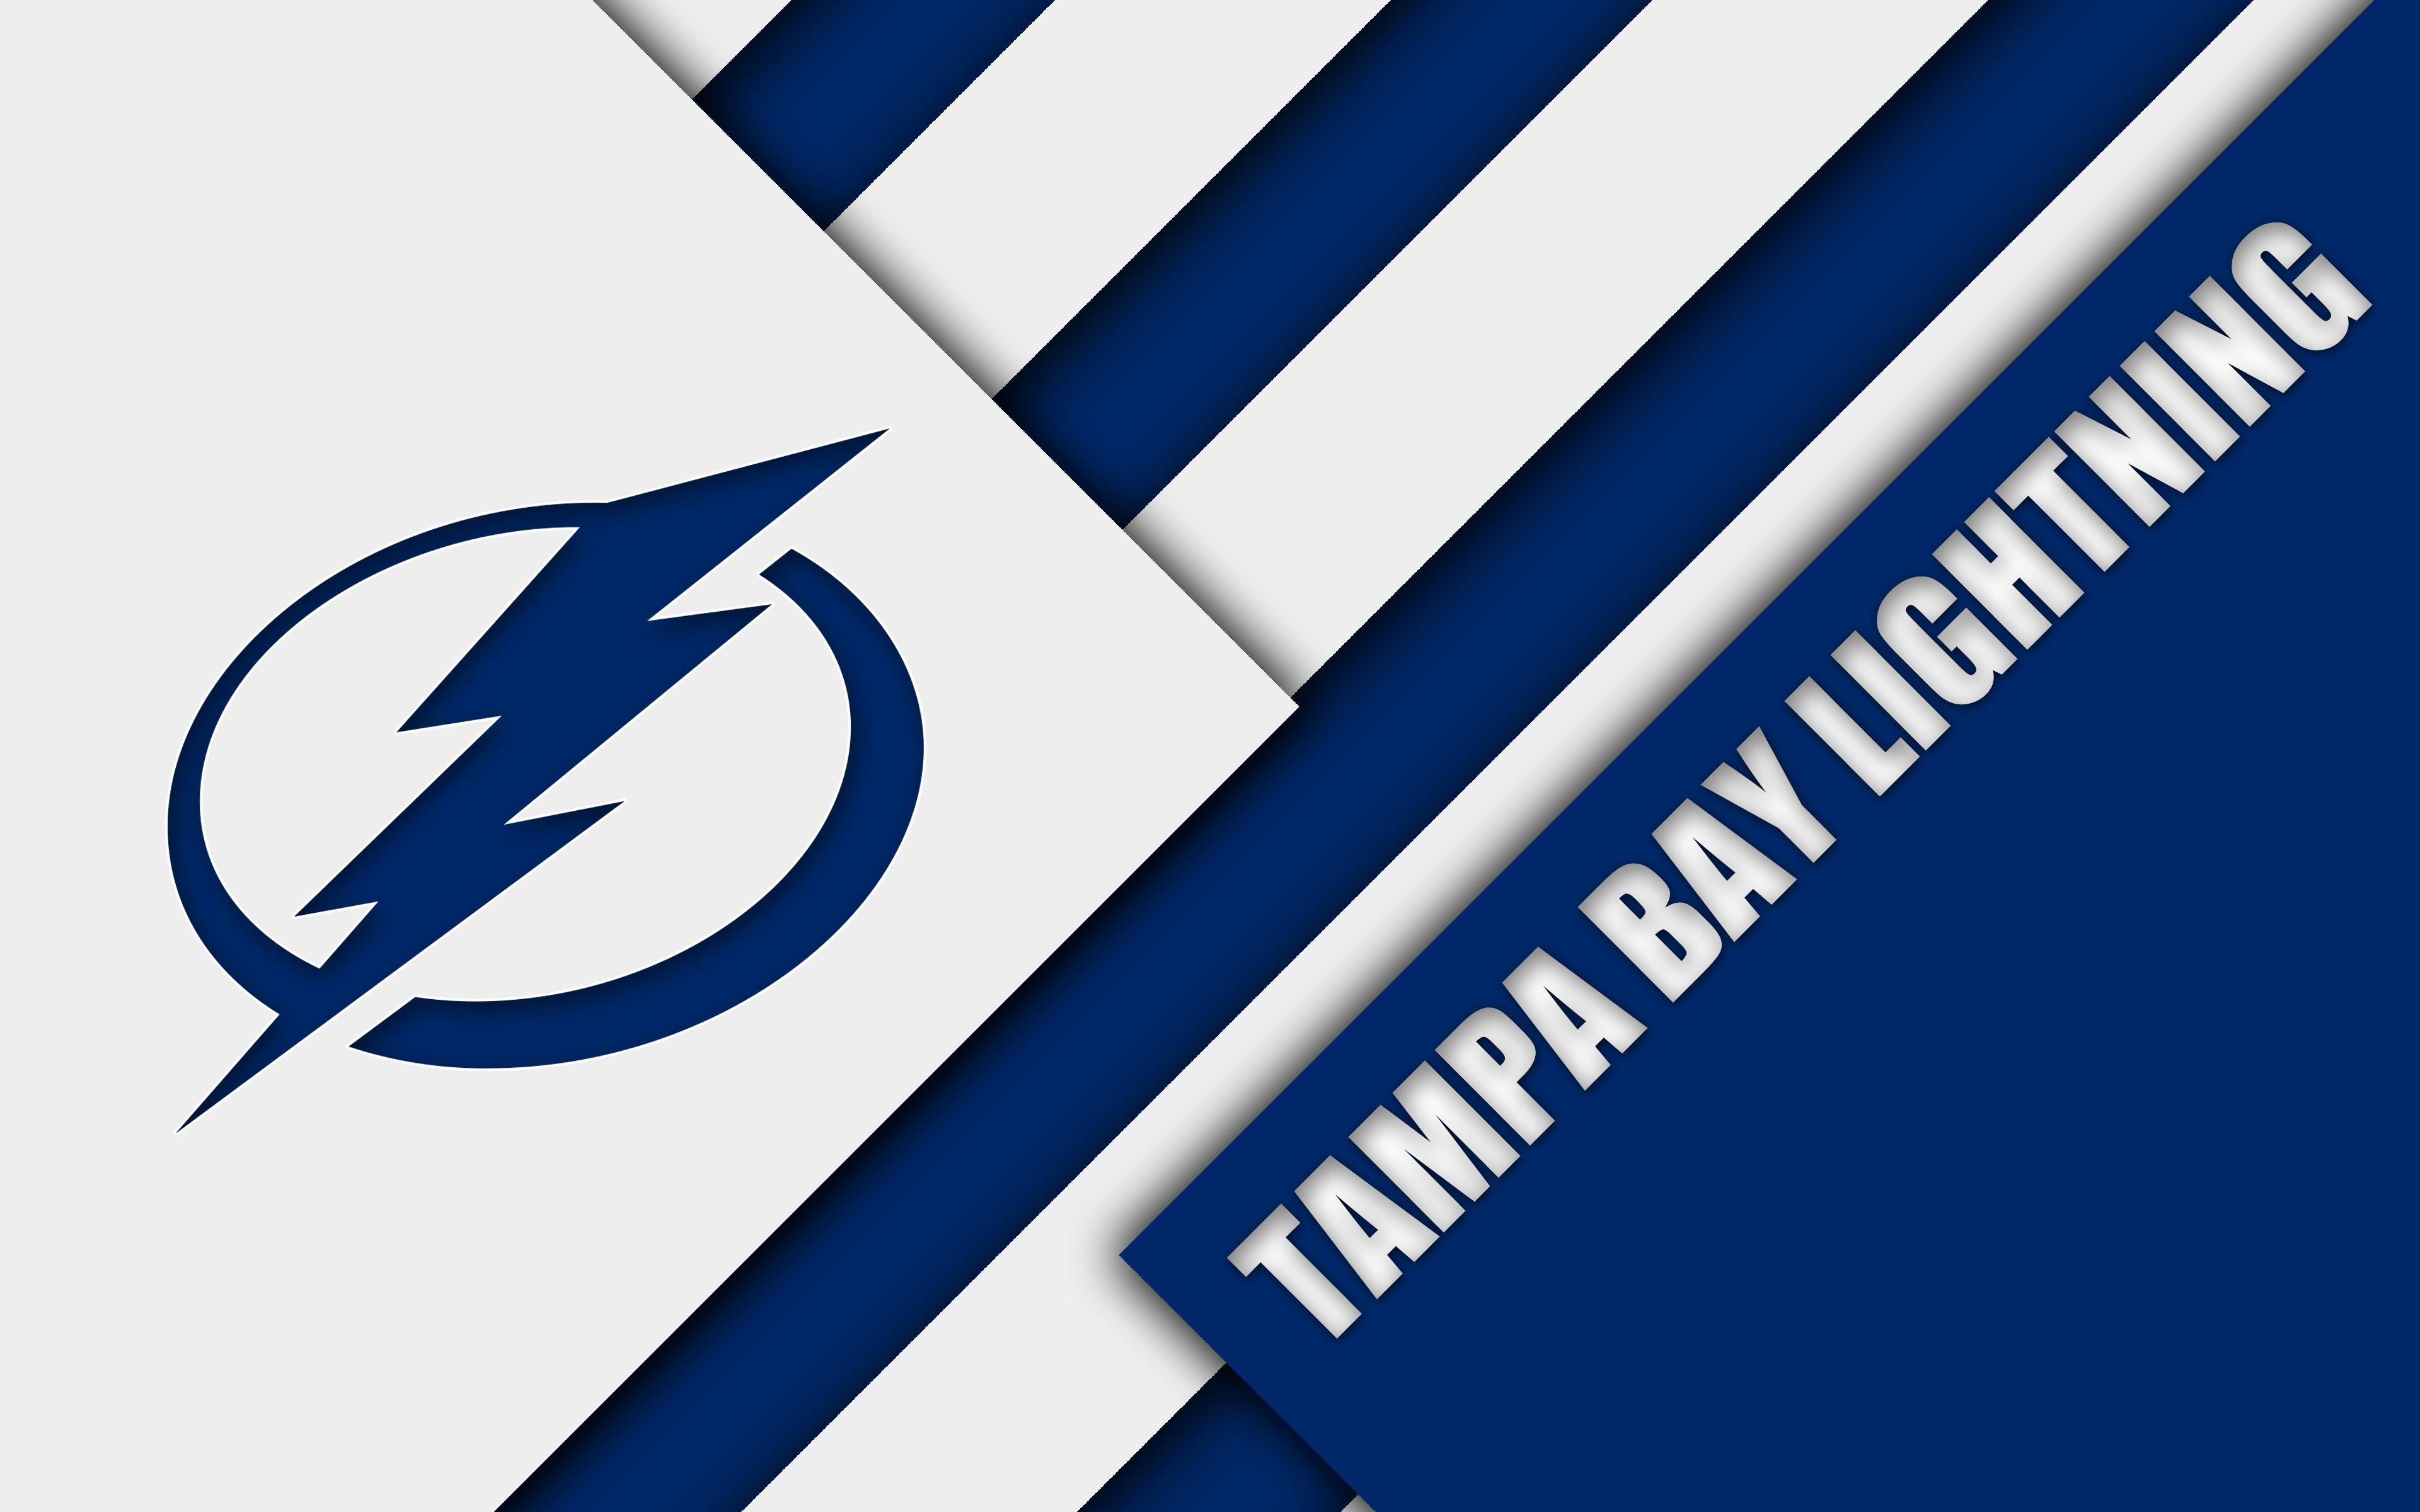 Tampa Bay Lightning Wallpapers - Top Free Tampa Bay Lightning